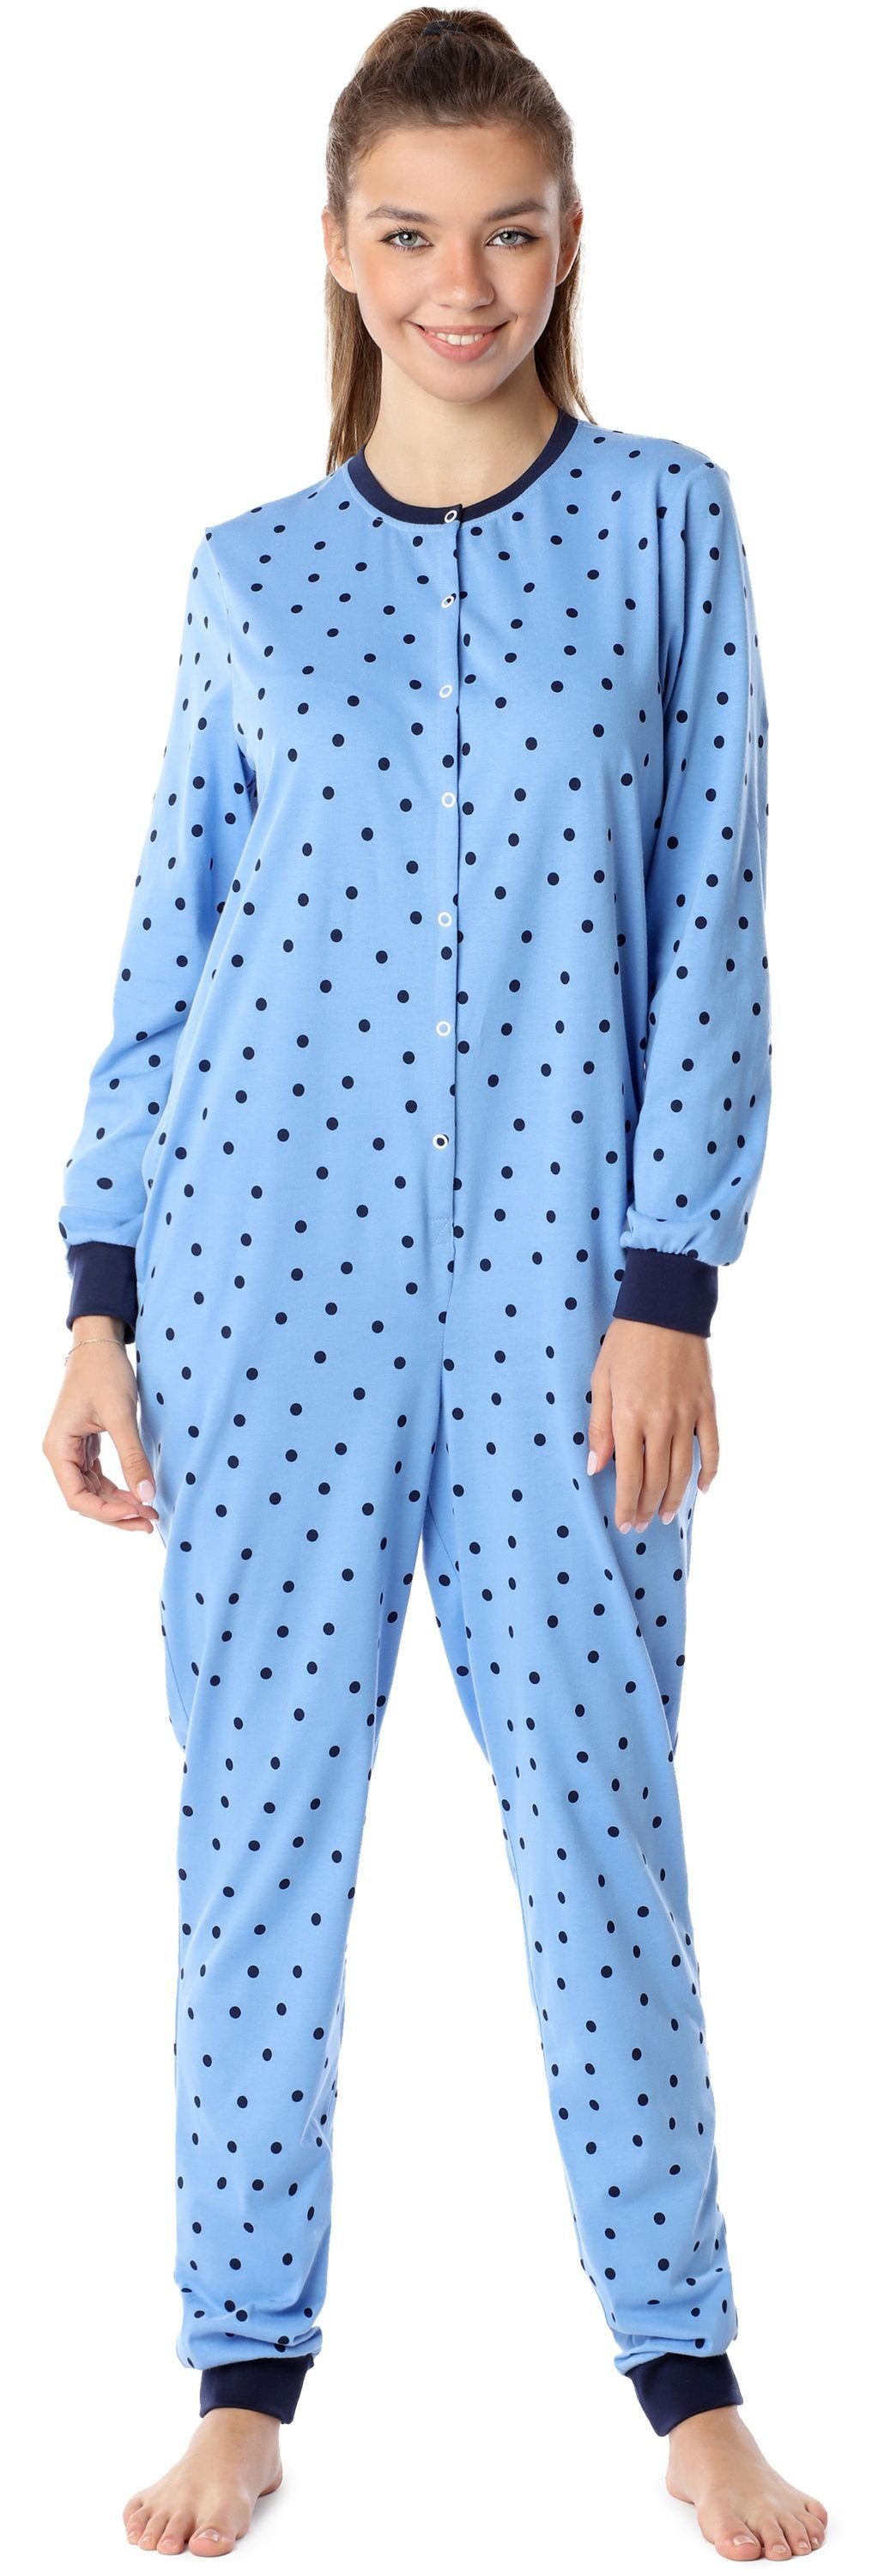 Merry Style Schlafanzug Mädchen Jugend Schlafanzug Schlafoverall MS10-335 Blaue/Punkte